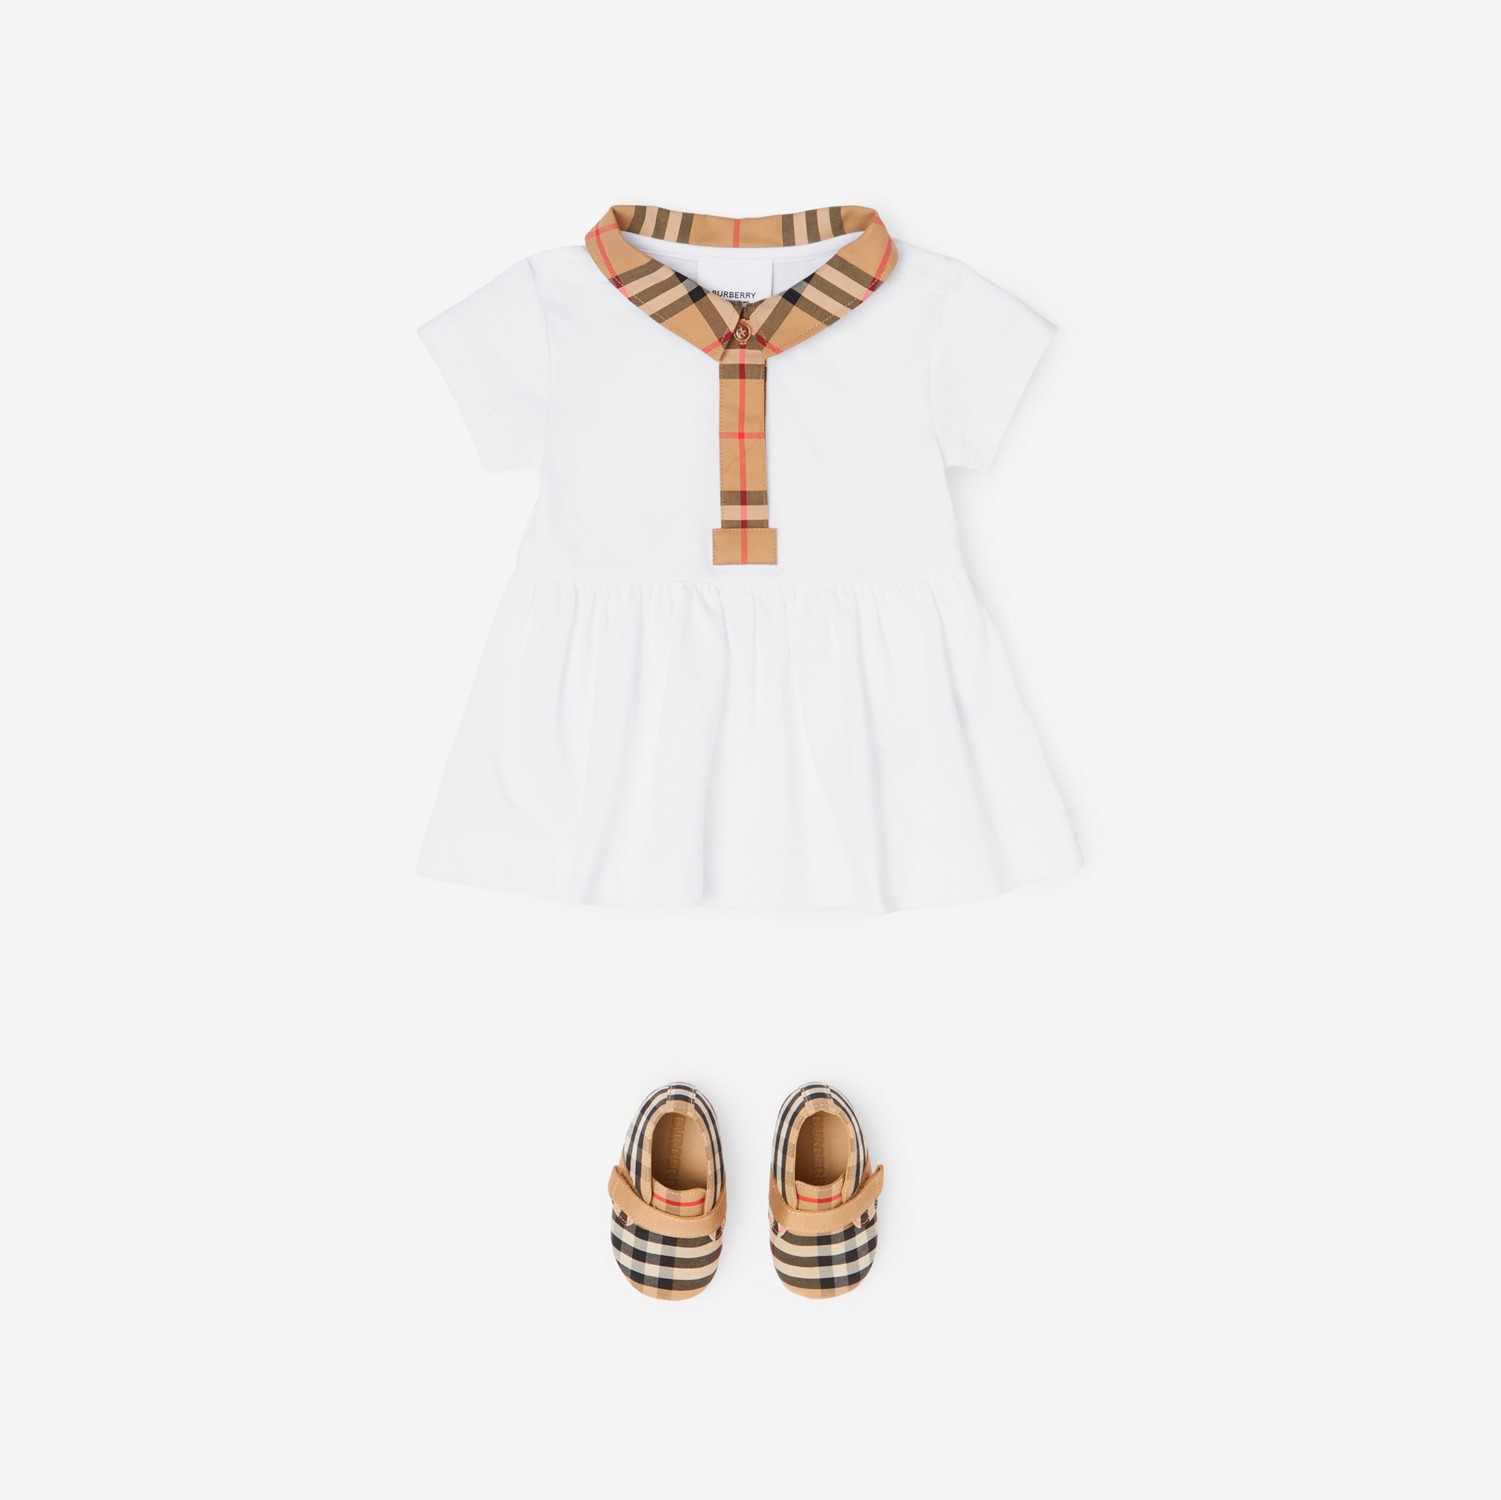 Stretchbaumwollpiqué-Kleid mit Karobesatz und Höschen (Weiß) - Kinder | Burberry®